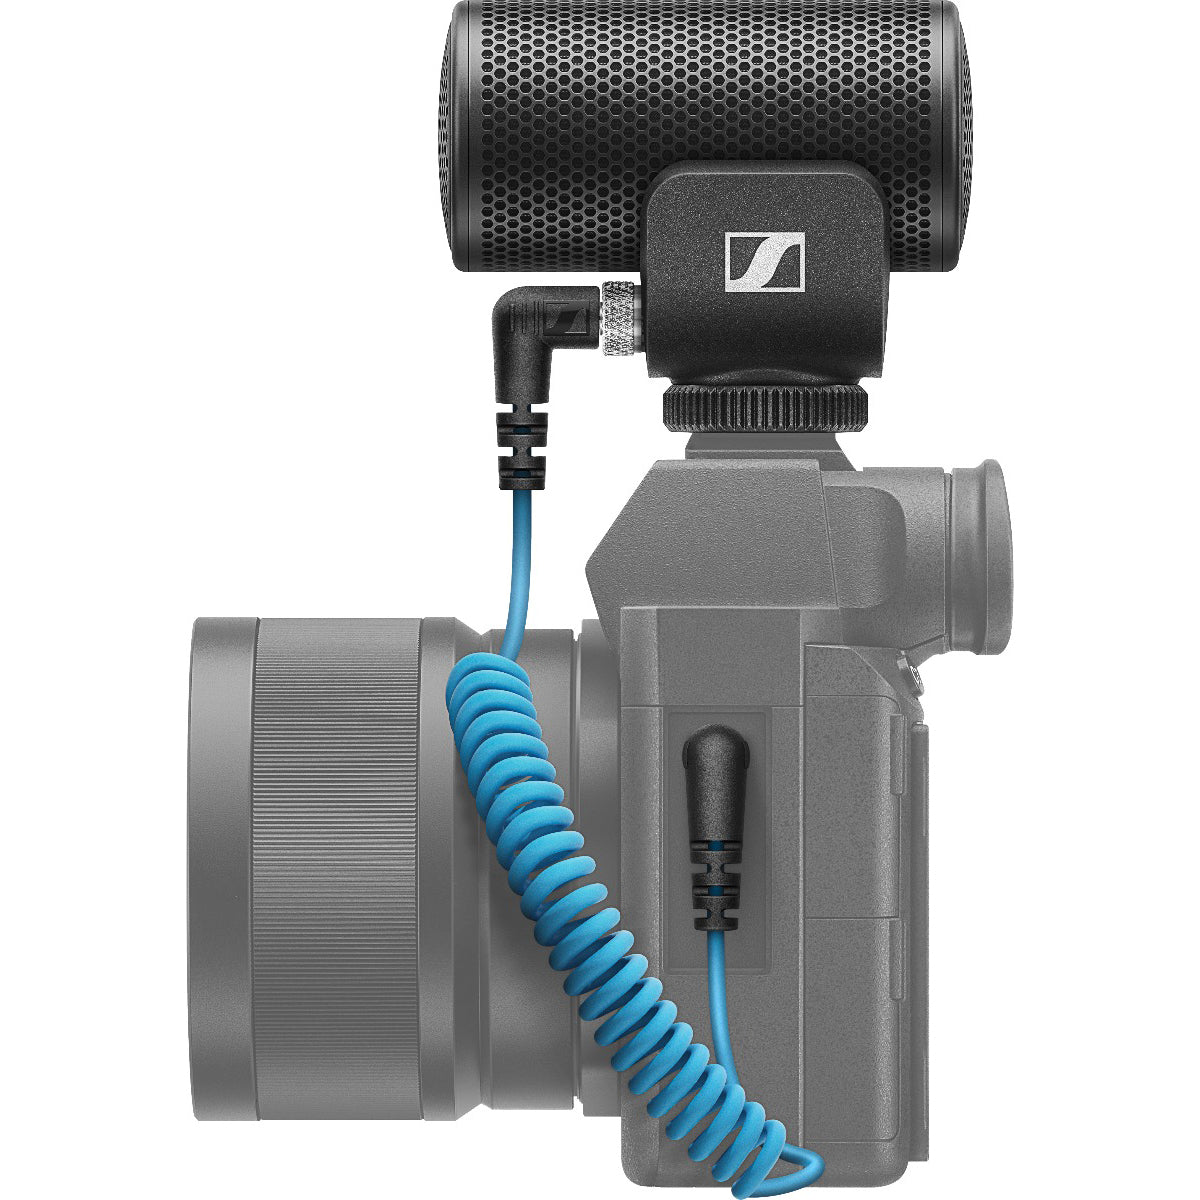 Sennheiser MKE 200 Directional Camera Microphone